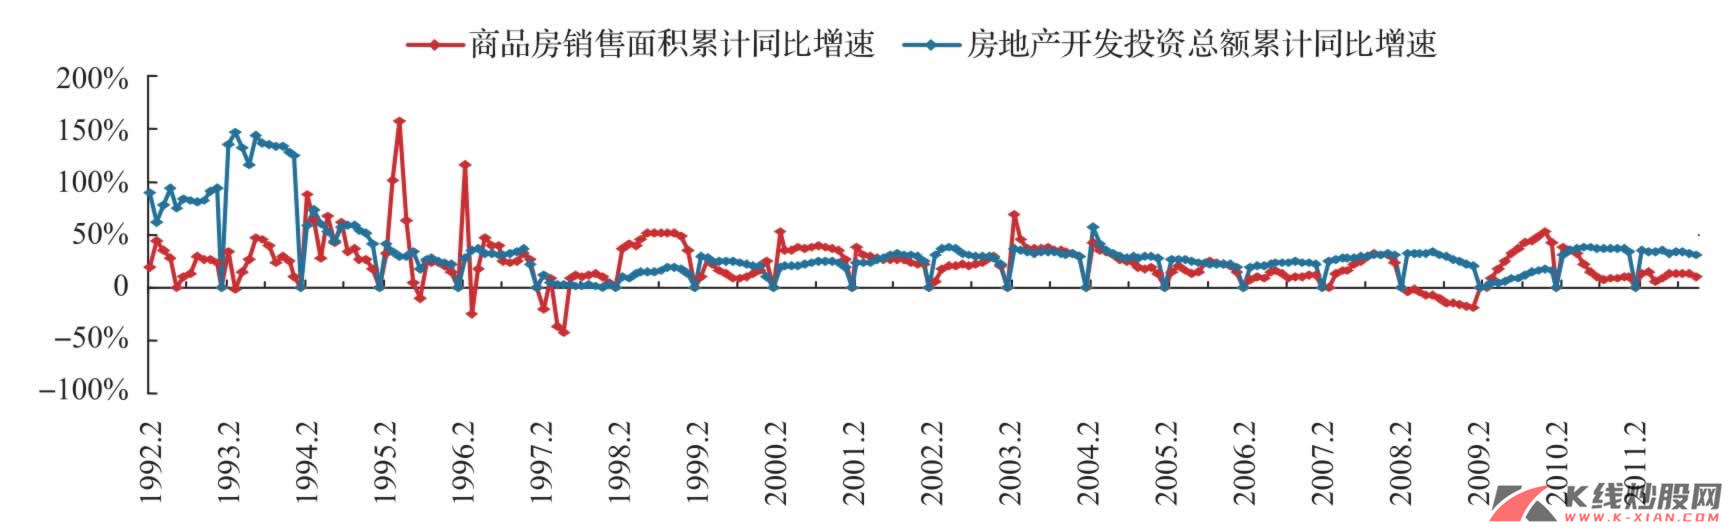 中国房地产开发投资累计同比增速与商品房销售面积累计同比增速